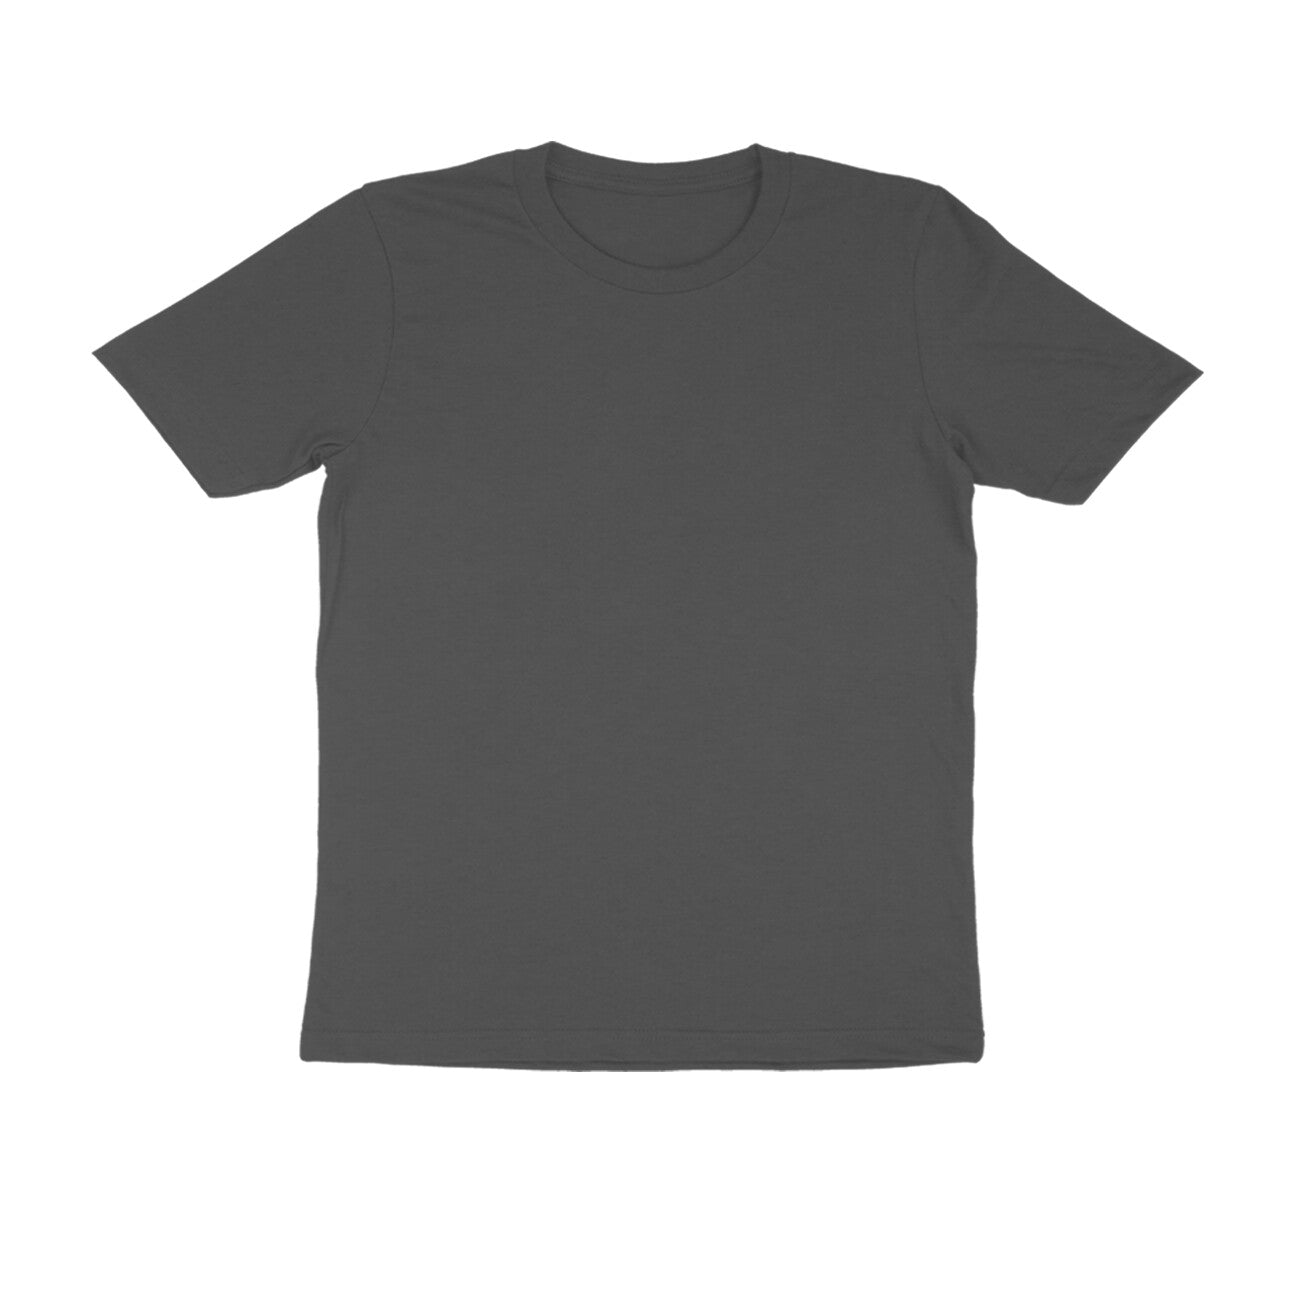 Charcoal Grey Plain Color T-Shirt